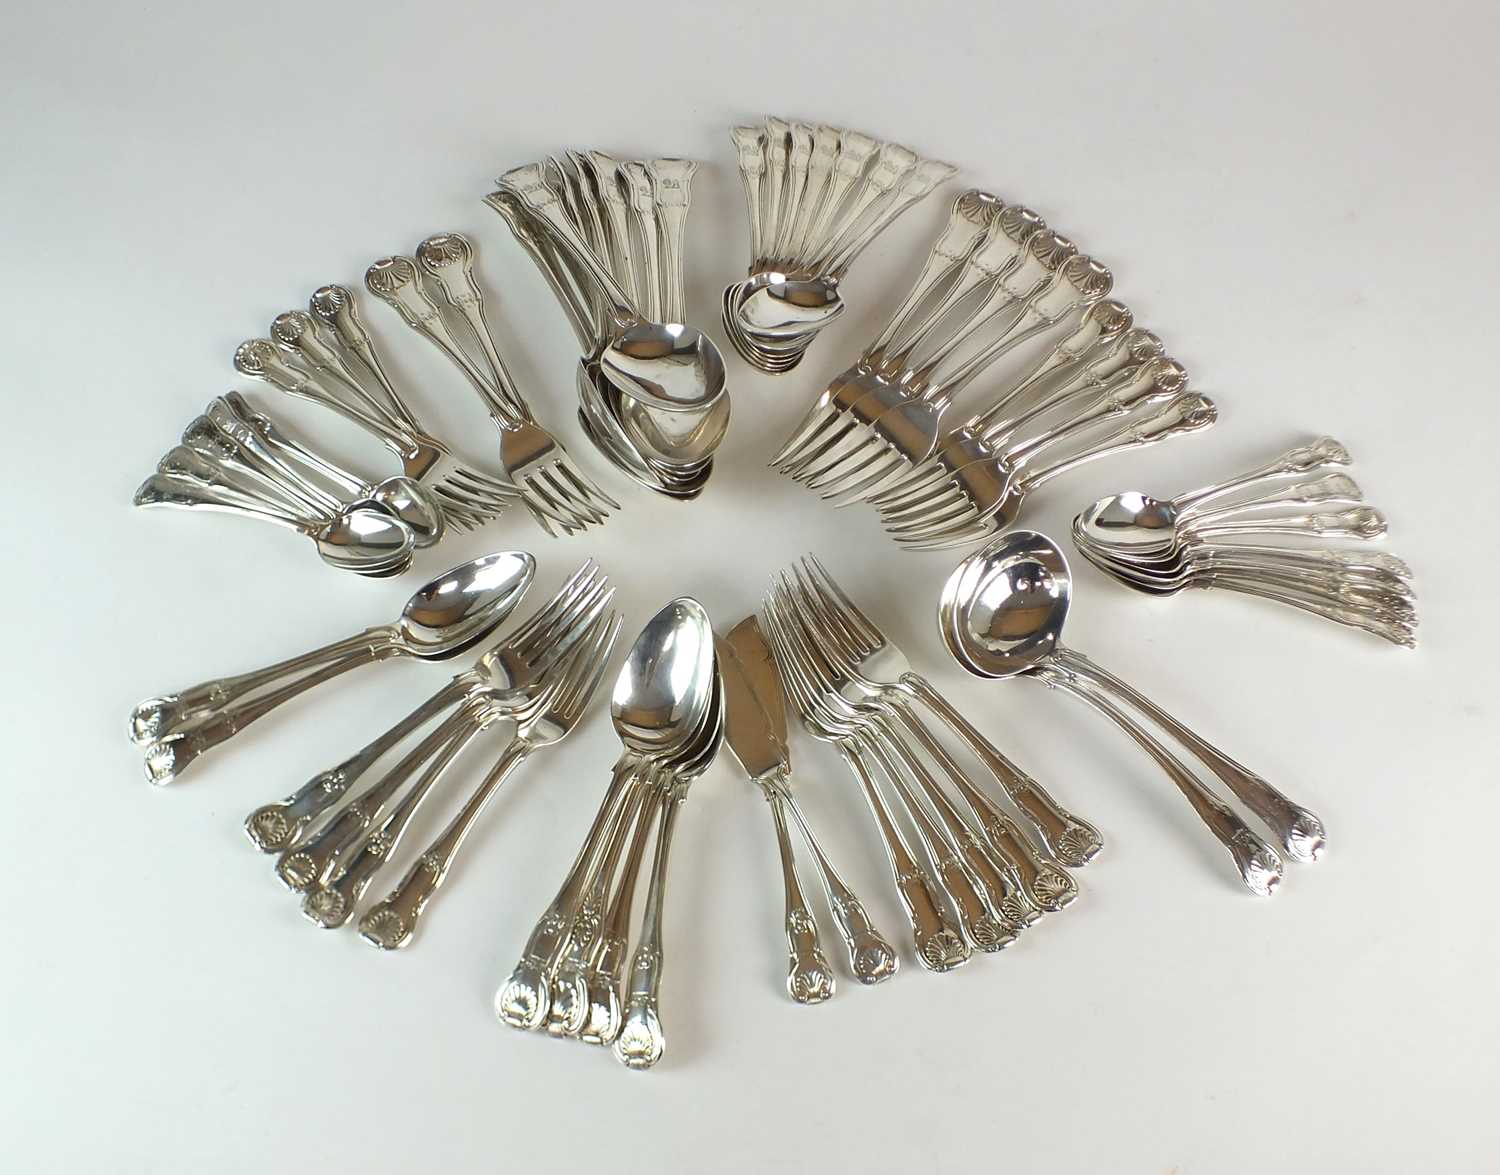 A part set of George III Kings pattern silver flatware